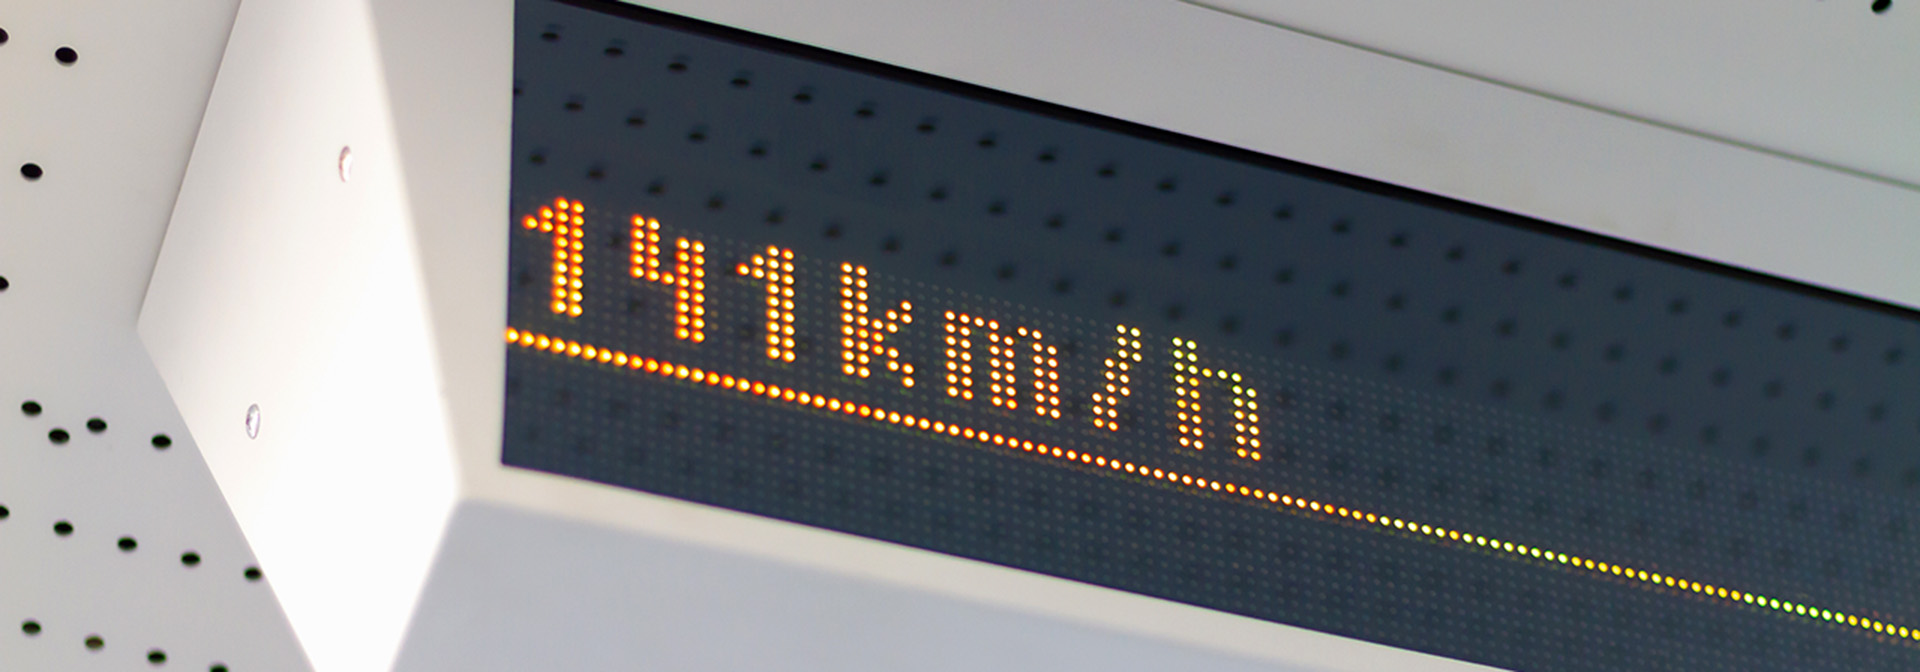 Teleste On-board passenger information